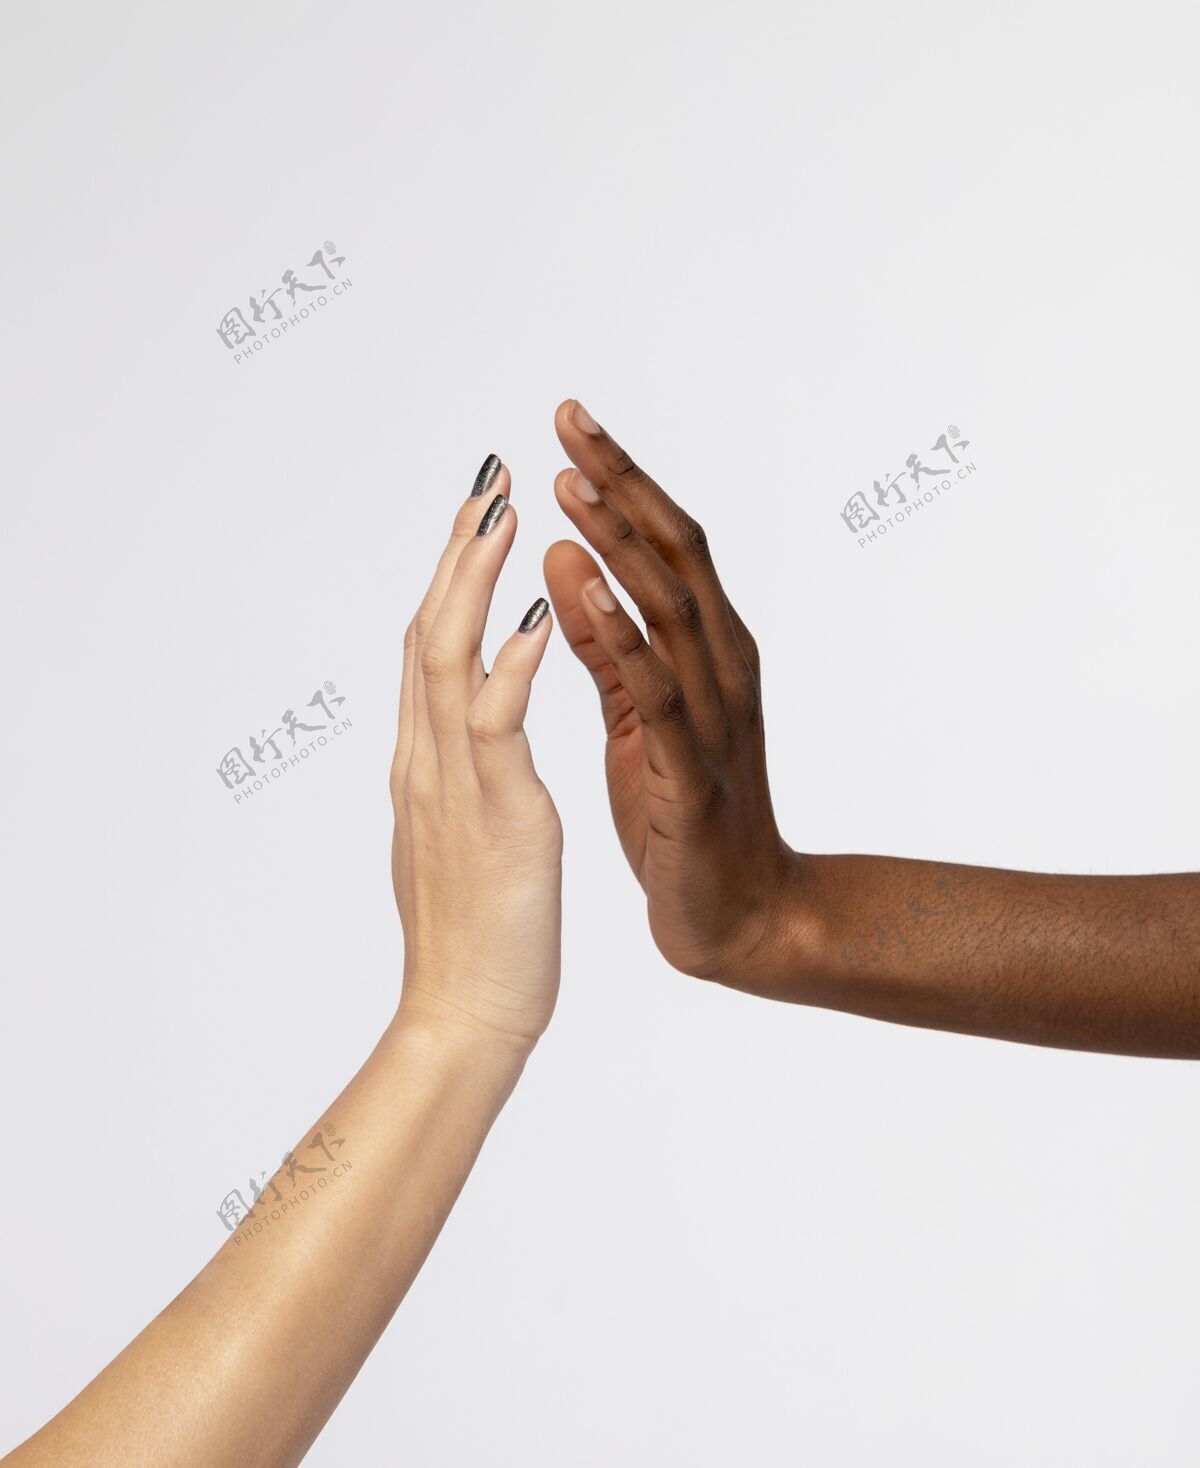 皮肤强壮的女性手牵手表示相互支持女性化完美健康